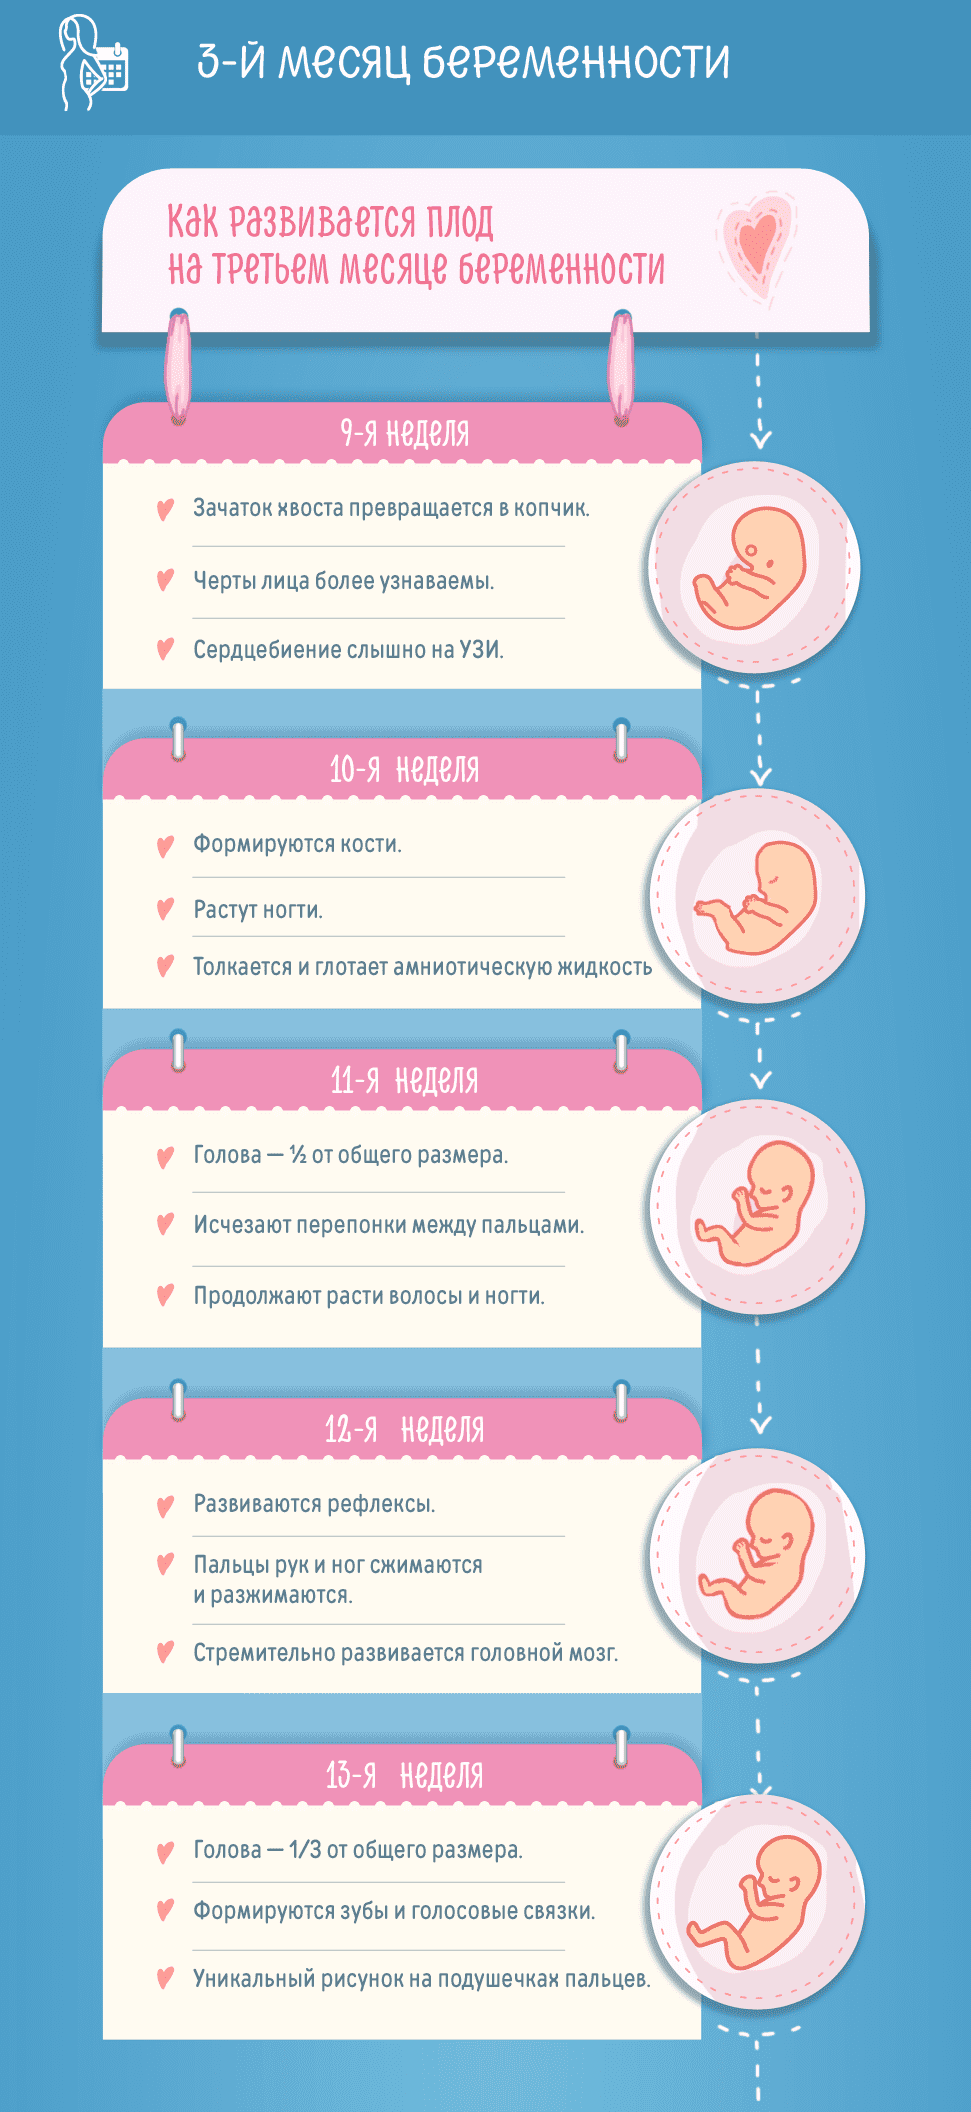 Третий месяц беременности: изменения в женском организме и развитие плода по неделям